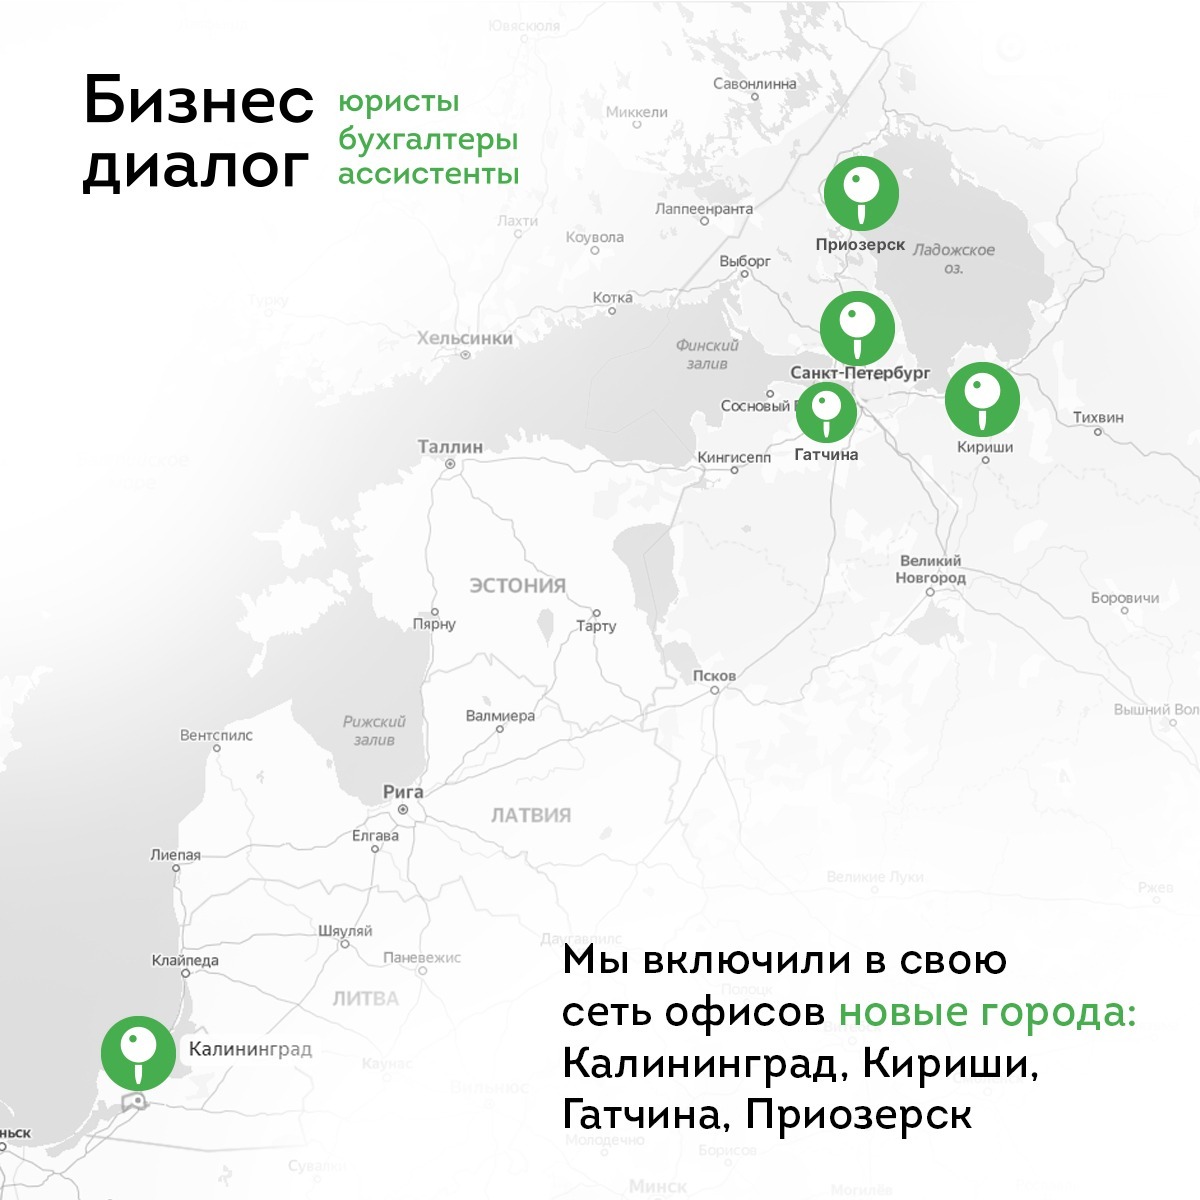 «Бизнес диалог» расширил свою сеть и вышел за пределы Санкт-Петербурга